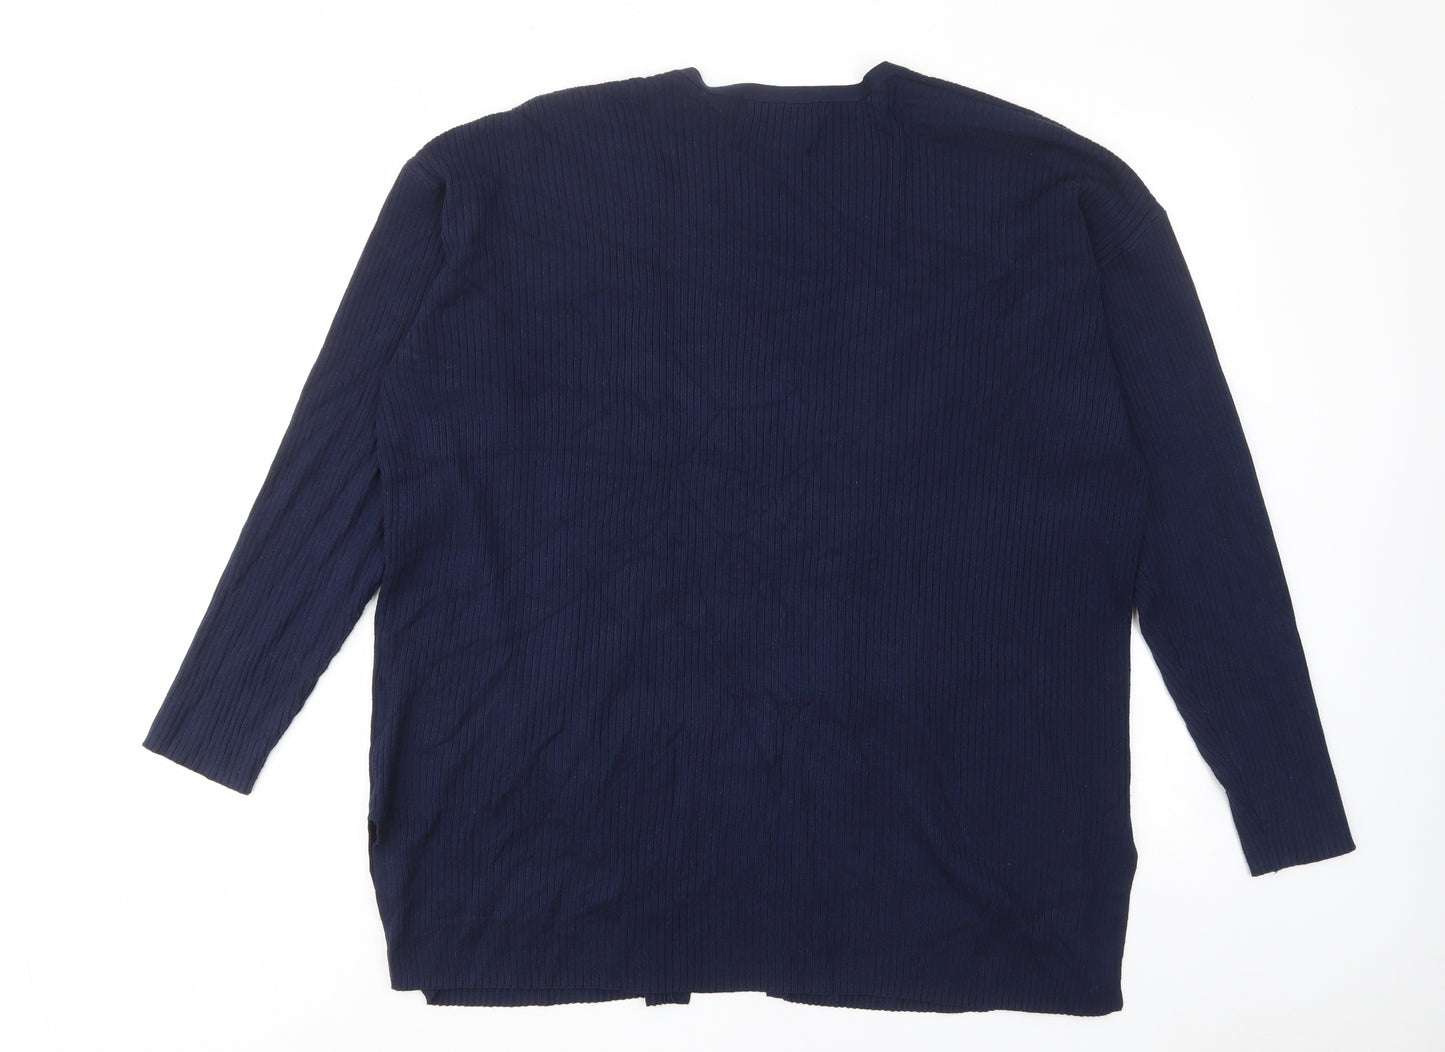 Marks and Spencer Womens Blue V-Neck Viscose Cardigan Jumper Size L - Pockets, Open